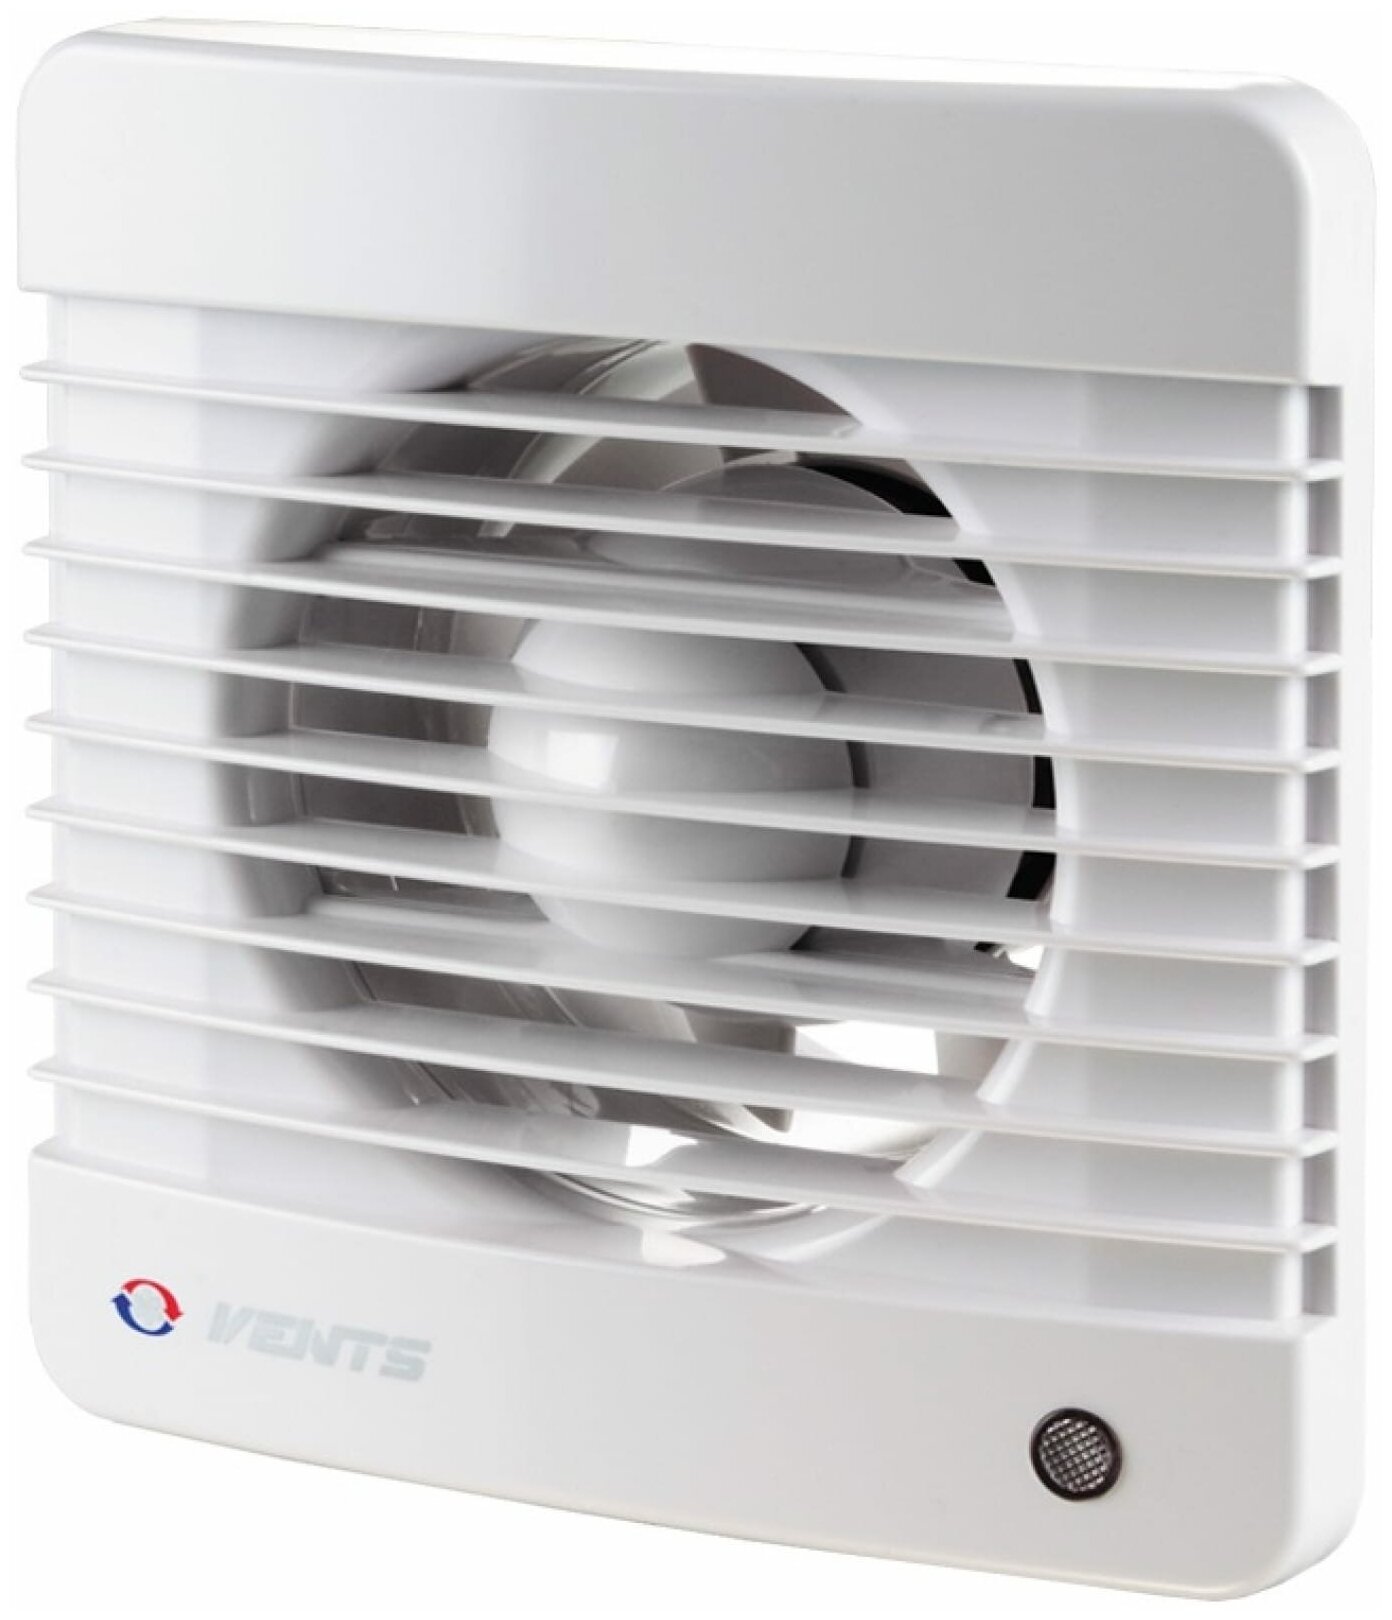 Вентилятор Vents вентс 100 MВТ турбо осевой 128 м3/ч 37 дБ, таймер, шнурковый выключатель